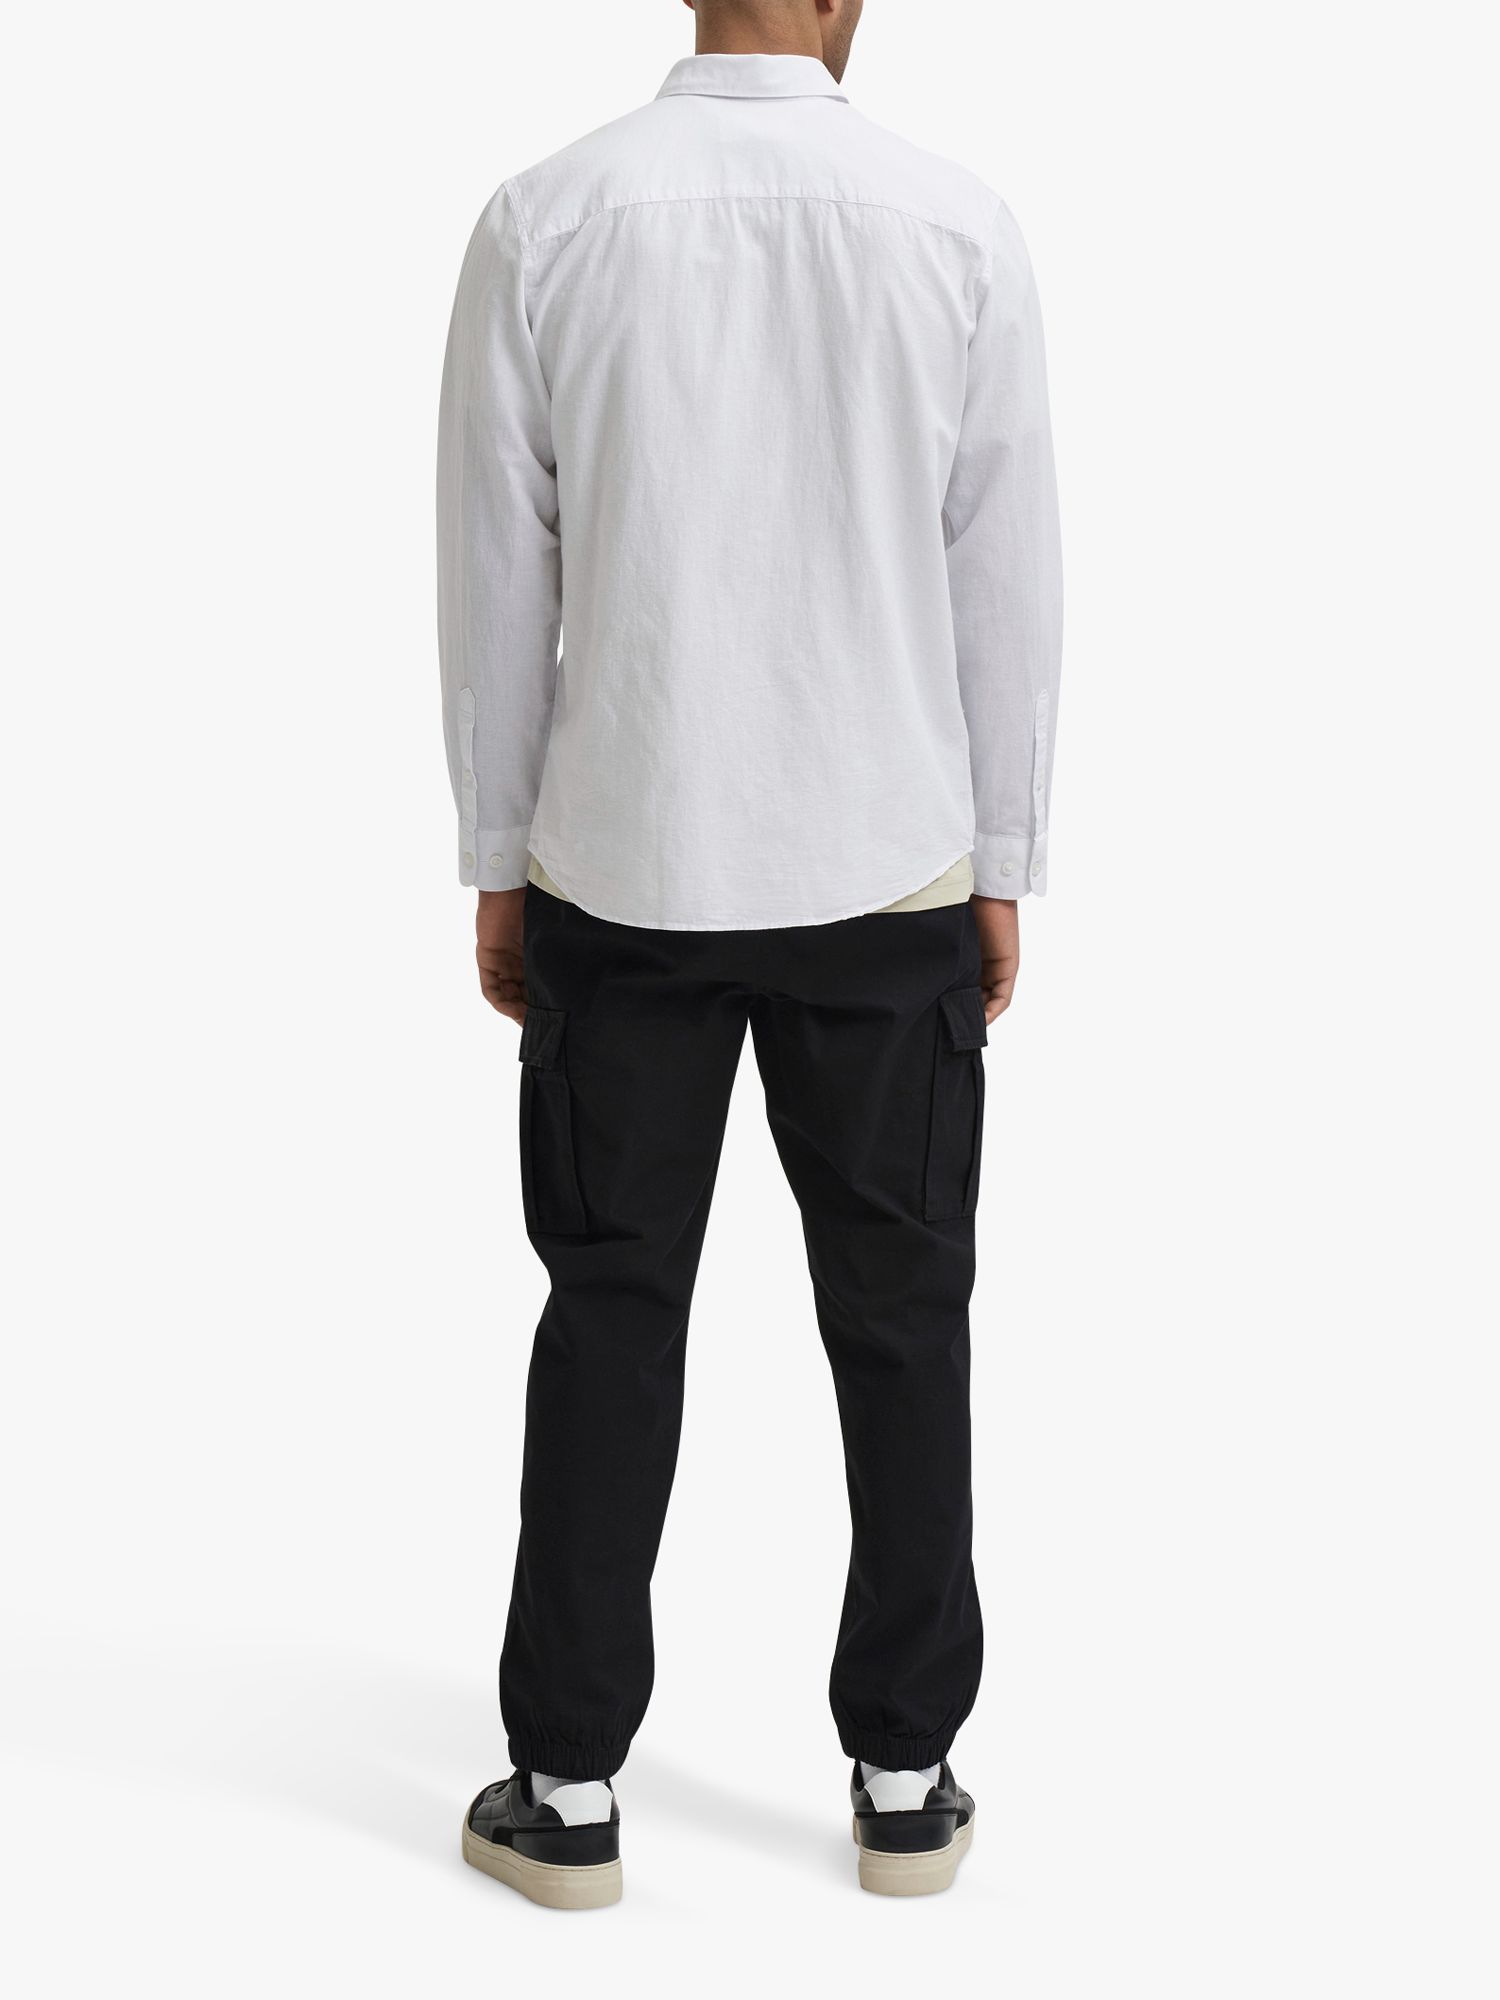 SELECTED HOMME Cotton Linen Blend Shirt, White, L